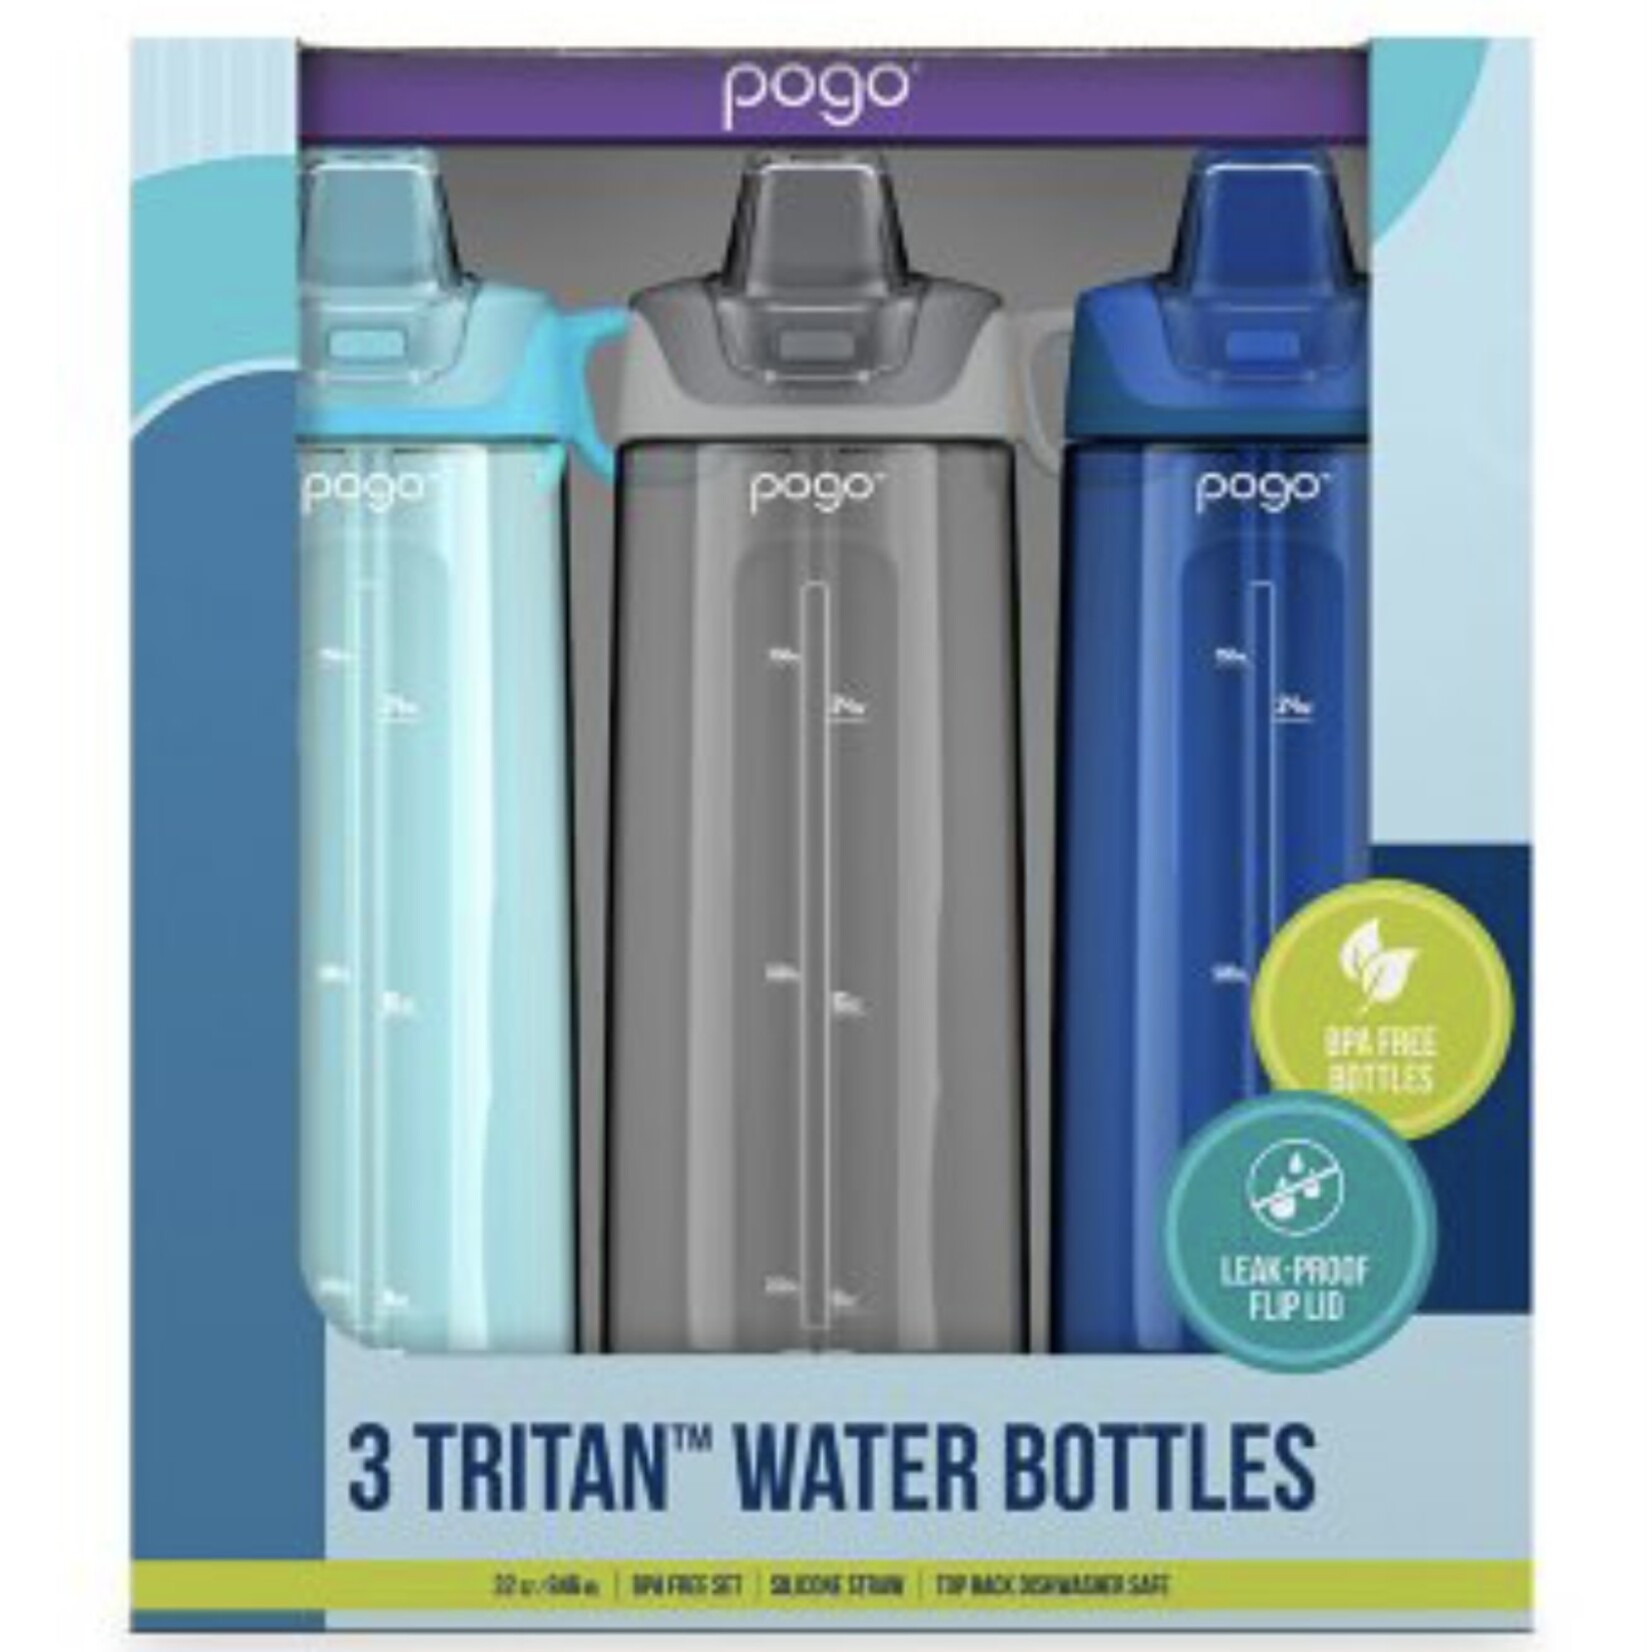 https://cdn.shoplightspeed.com/shops/668198/files/57567316/1652x1652x2/discount-central-pogo-32-oz-tristan-water-bottles.jpg